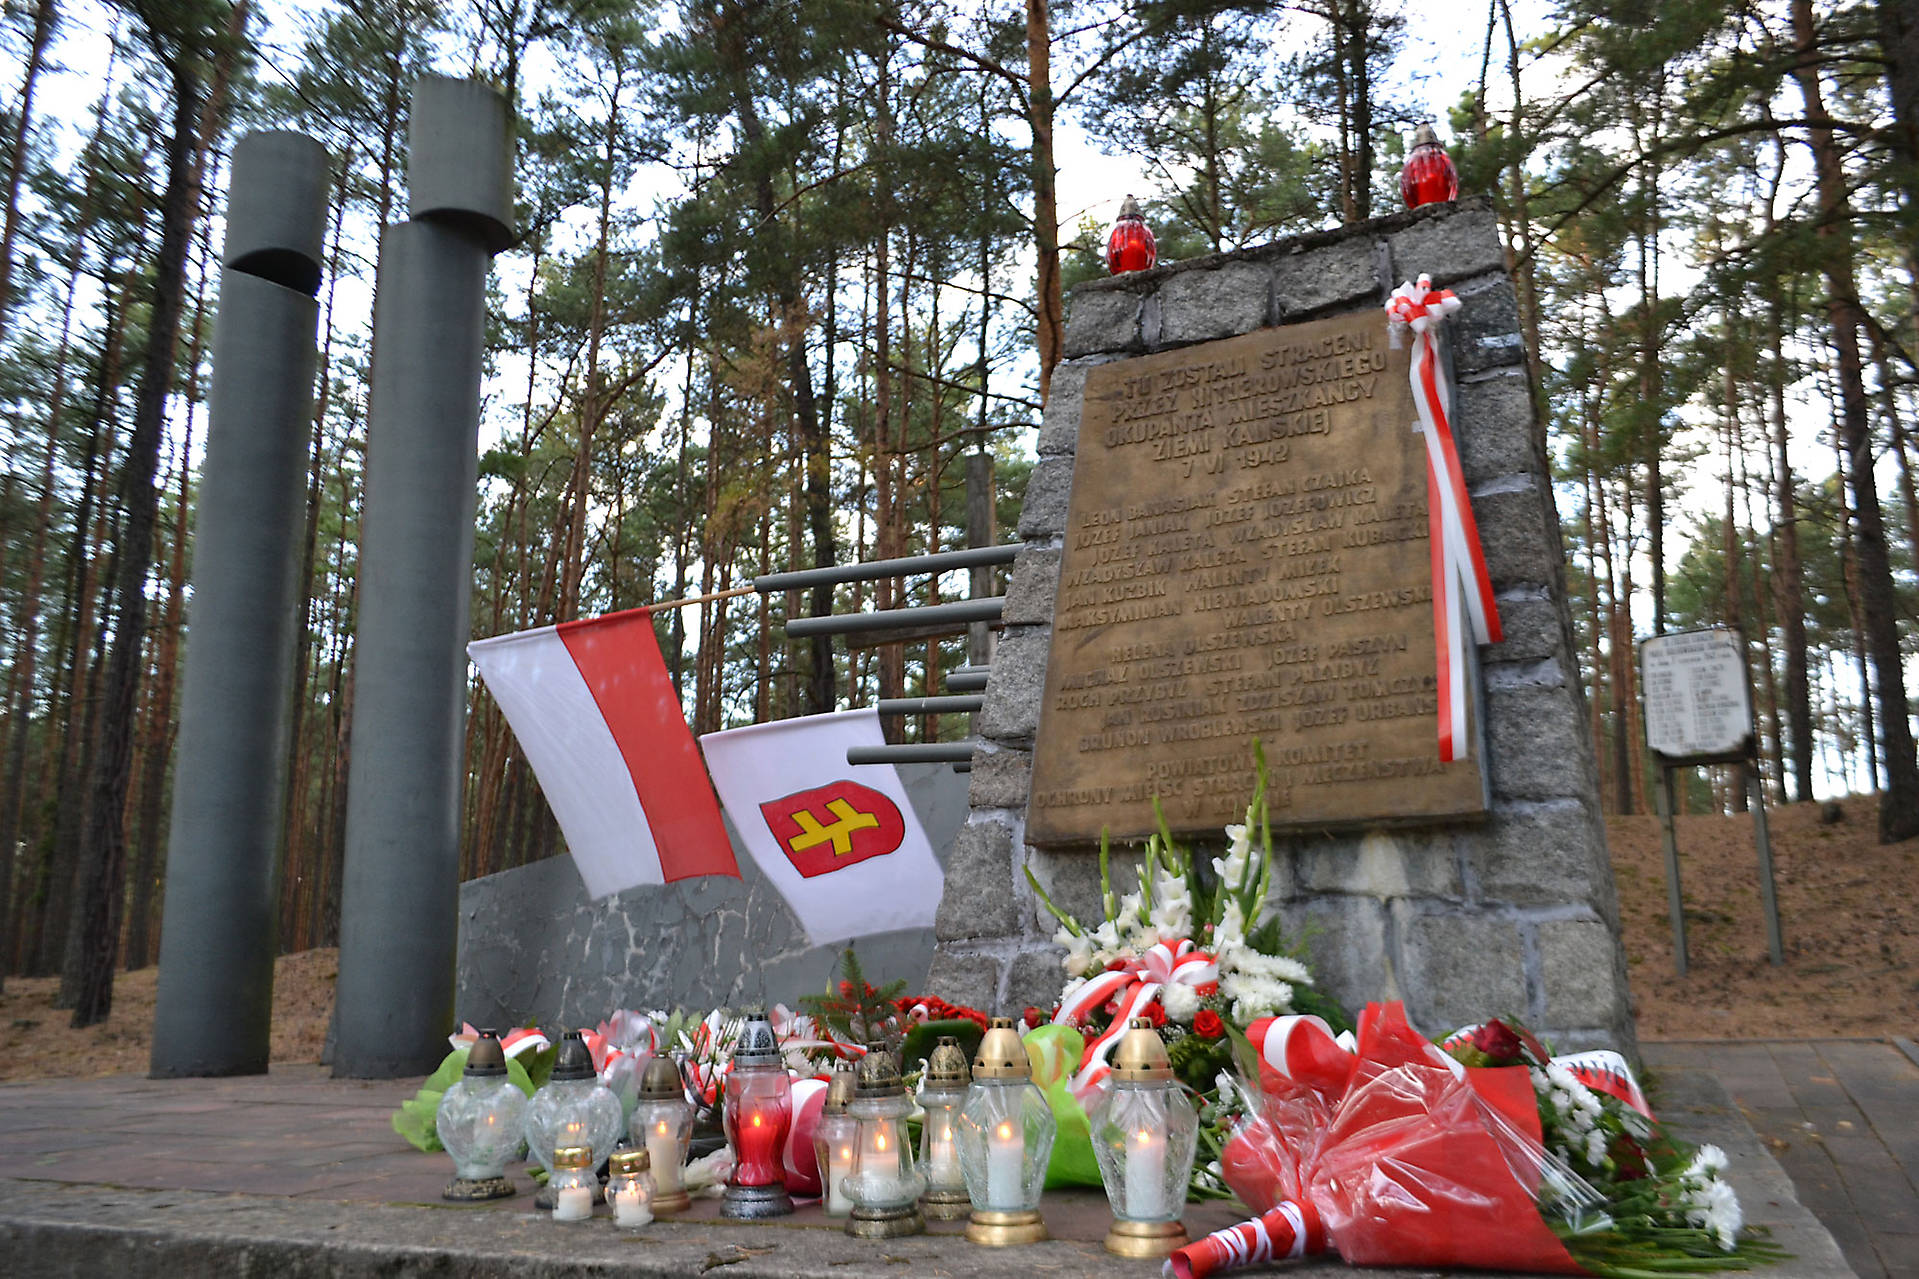 Mogiła w lesie w Białej Panieńskiej_1: Zdjęcie przedstawia udekorowany kwiatami i flagami pomnik wykonany z kamienia.